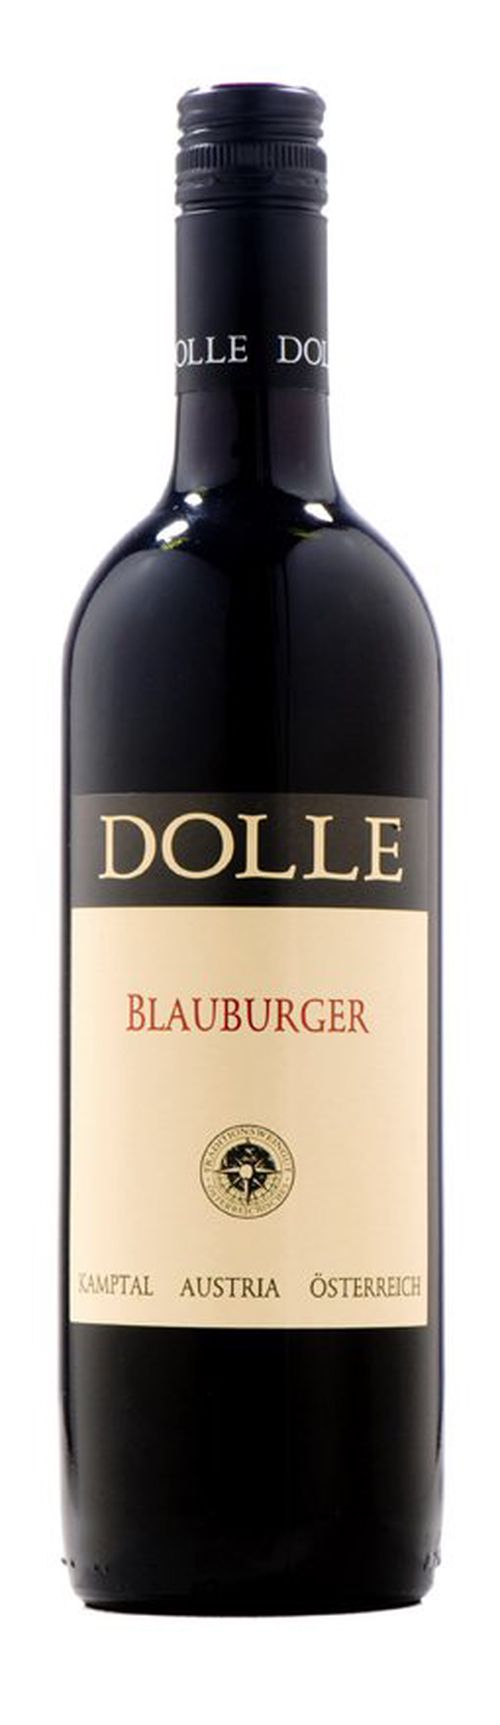 Peter Dolle Blauburger 2015 0,75l 13%